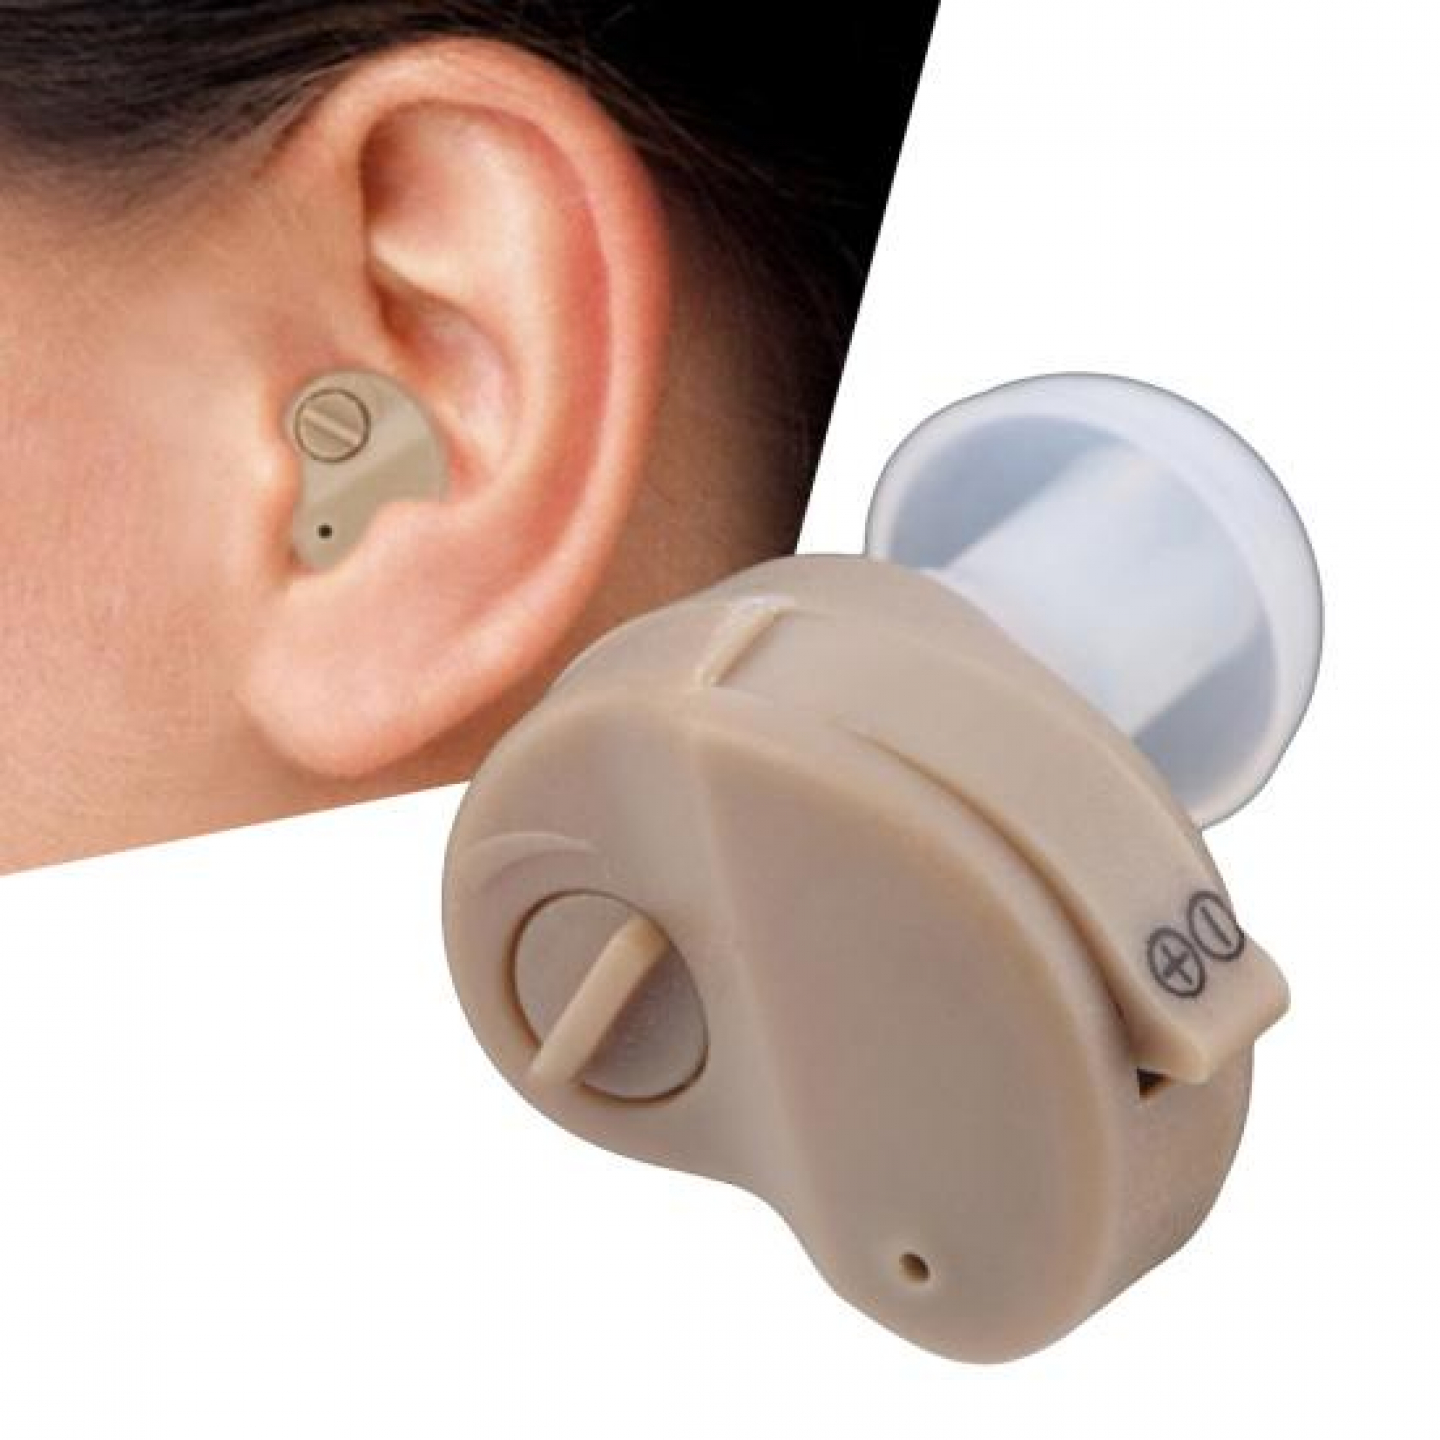 Mini Aide auditive pour mieux entendre vos proches